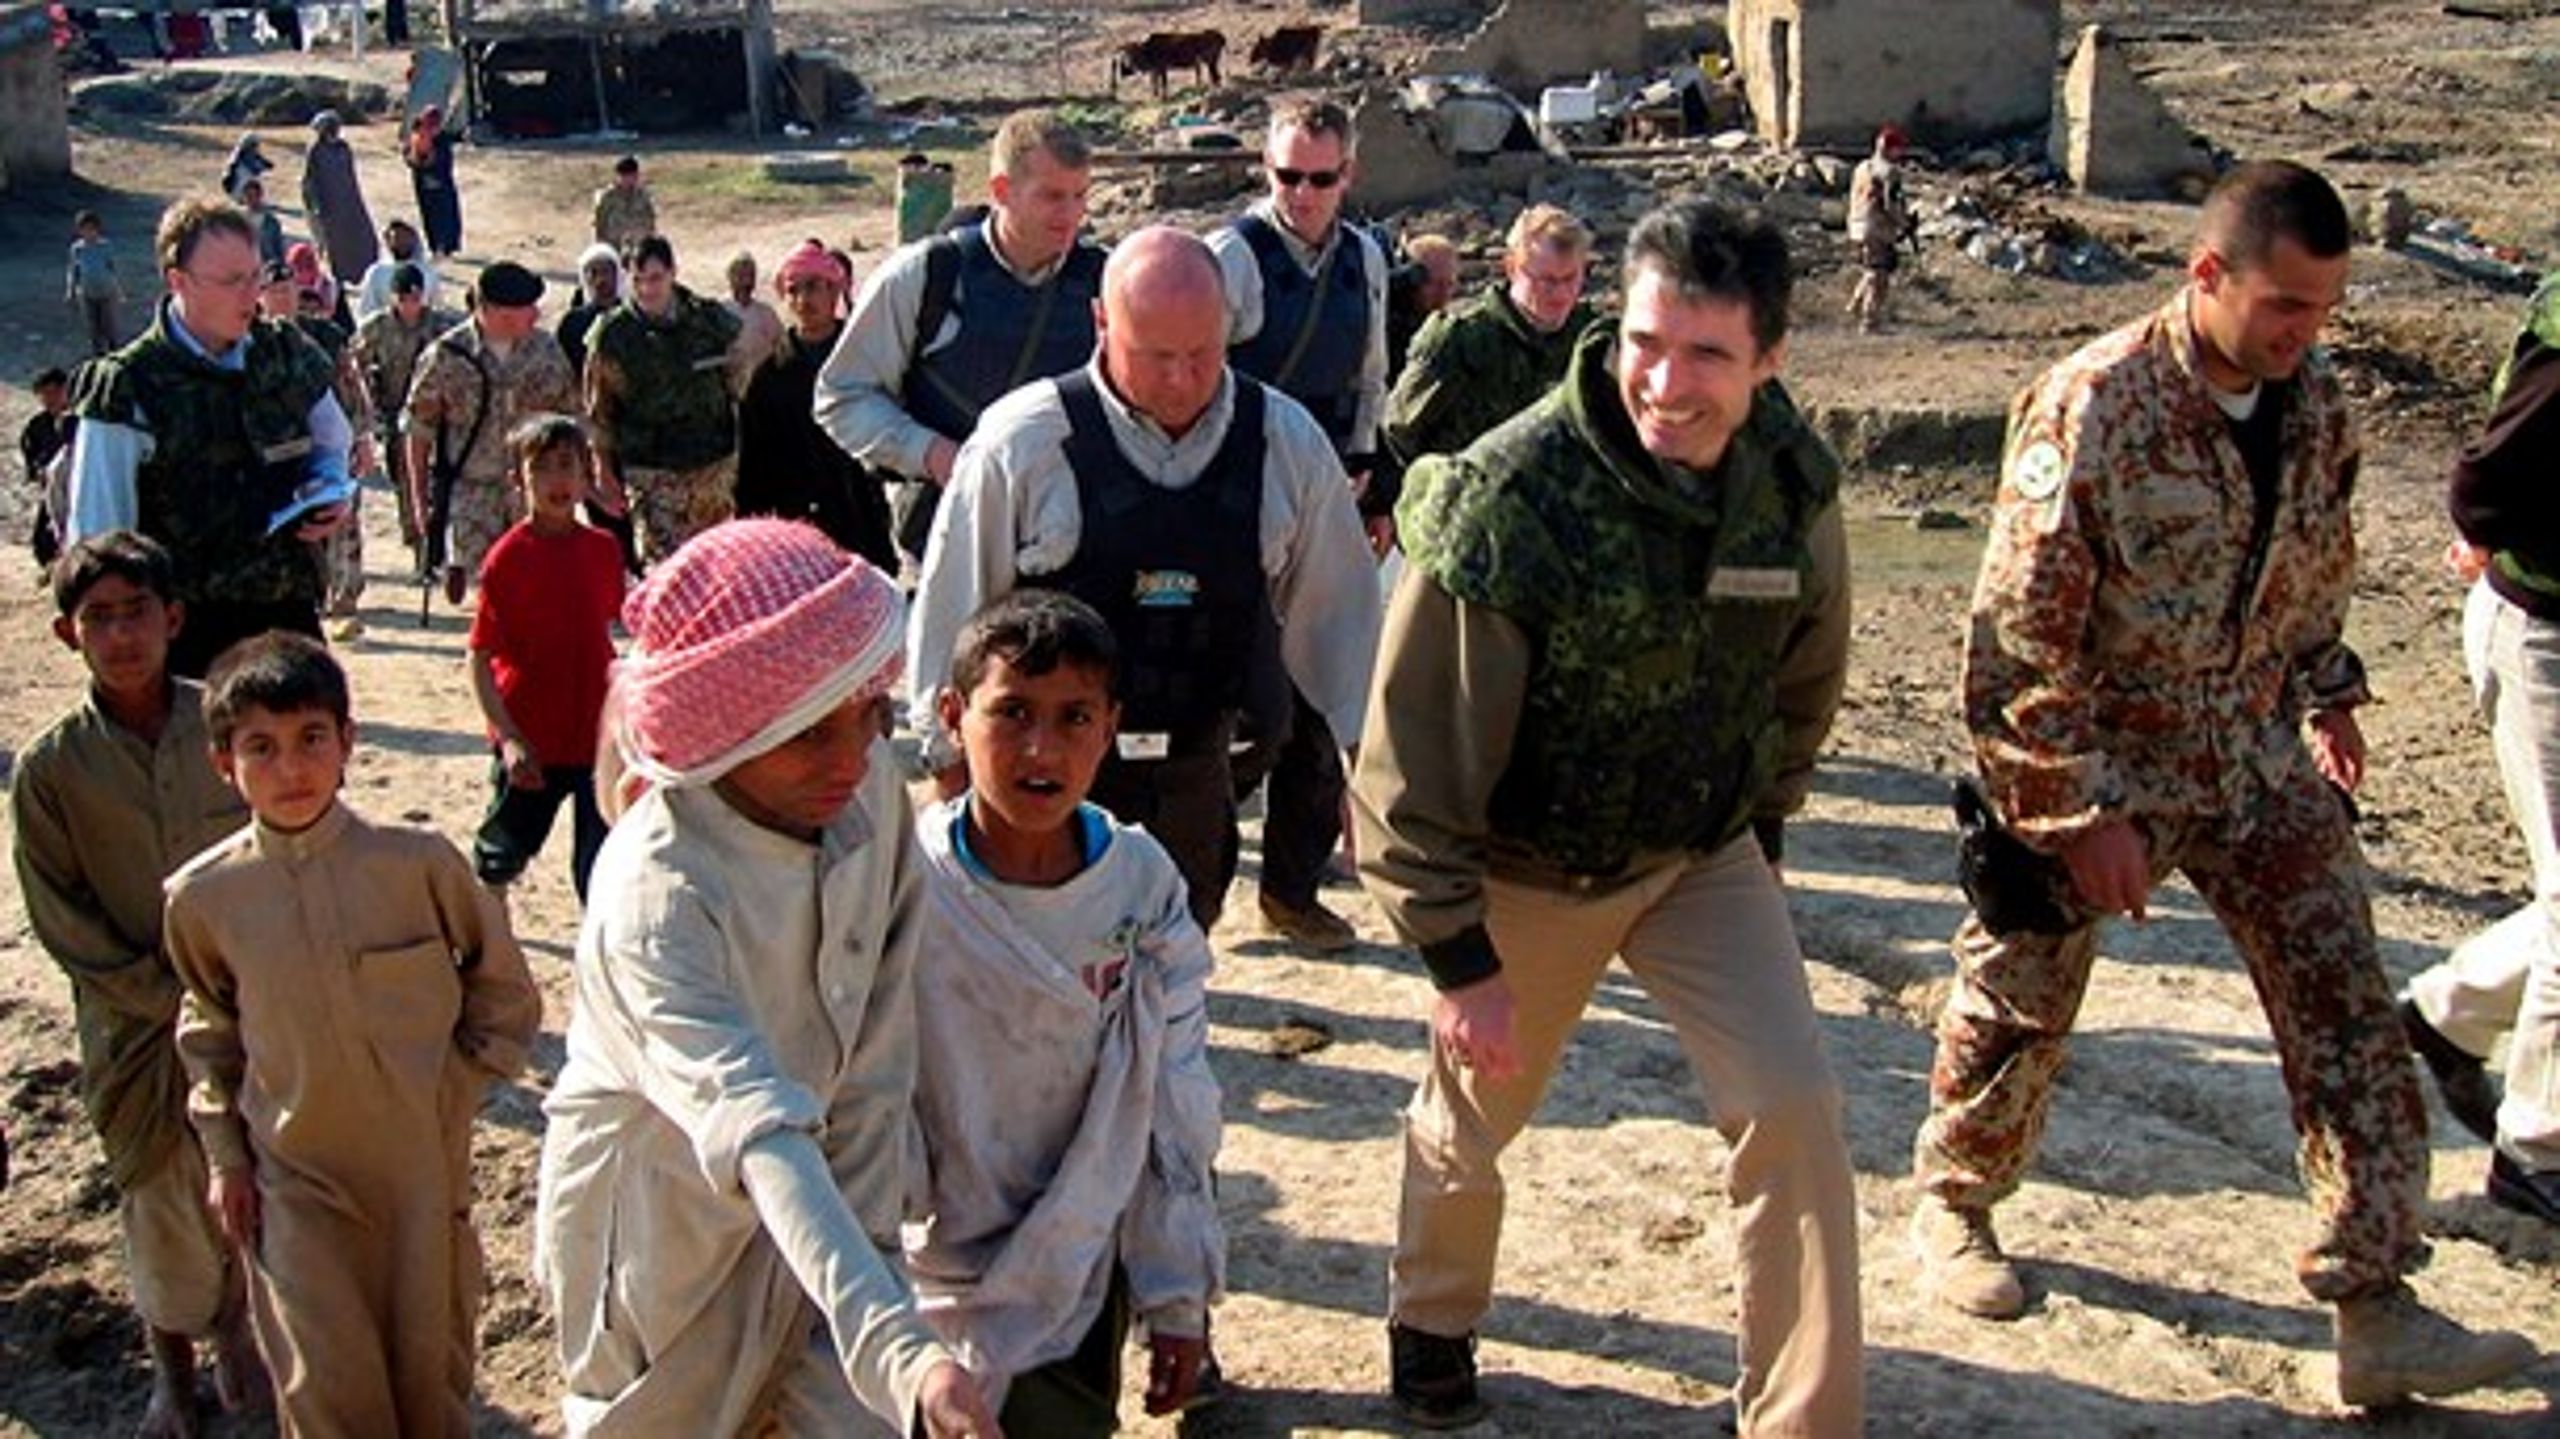 Det giver god realpolitisk mening, at Danmark fulgte USA i Irak-krigen 2003, skriver Michael Baggesen Klitgaard.